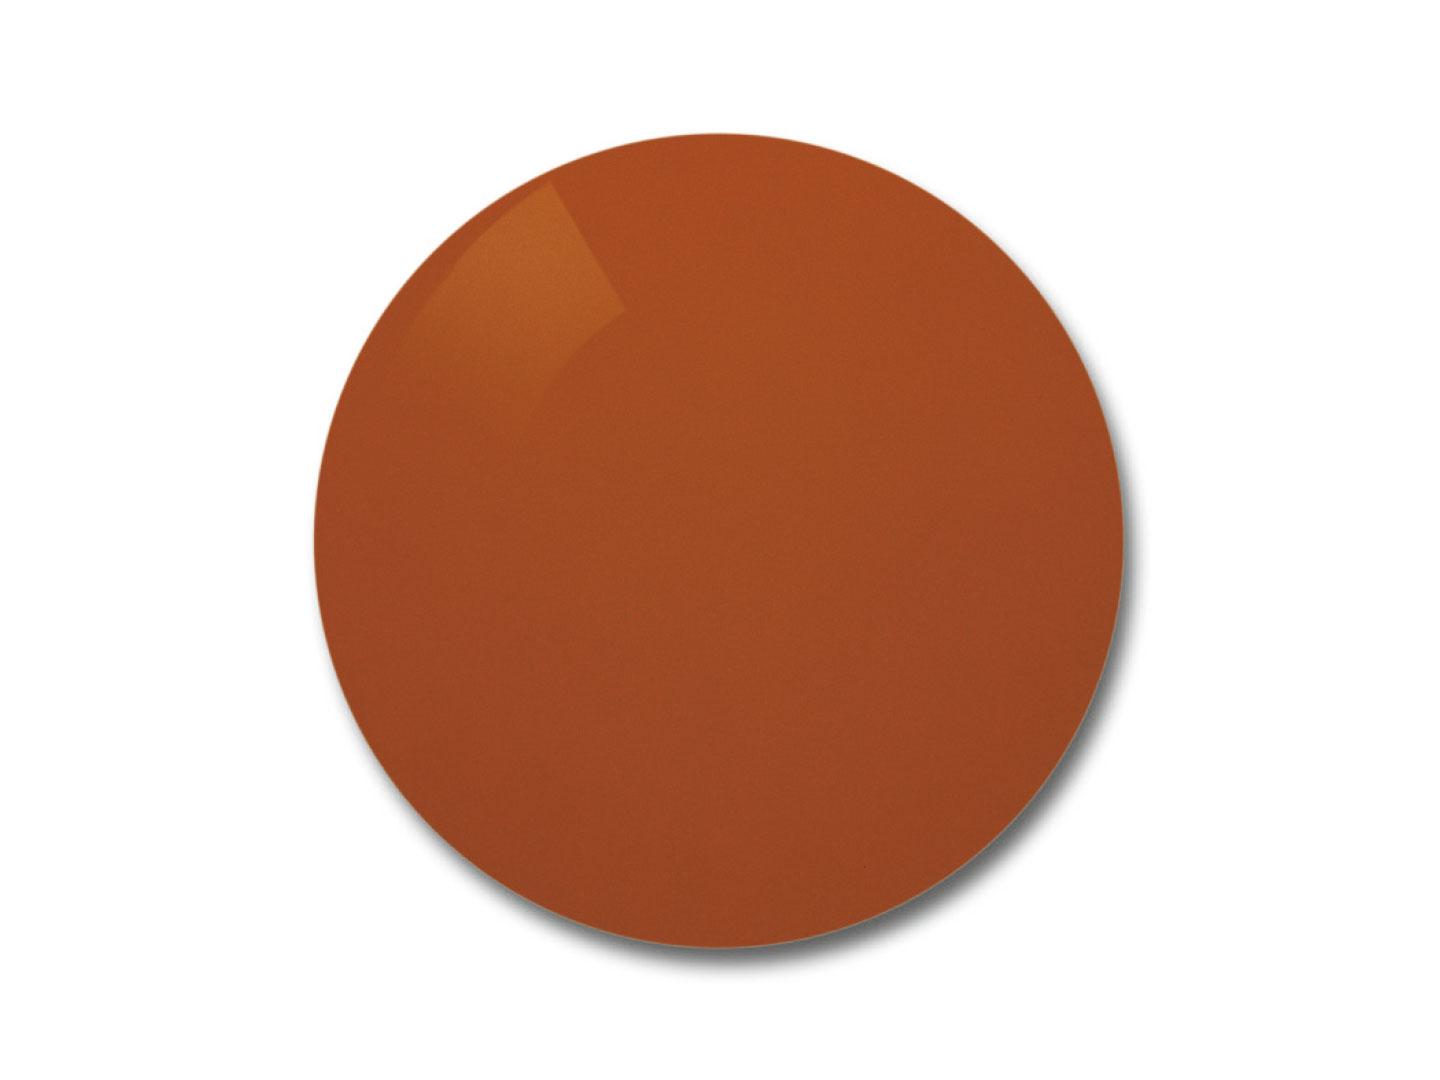 Изображение линзы ZEISS Skylet® Fun с оранжево-коричневой тонировкой